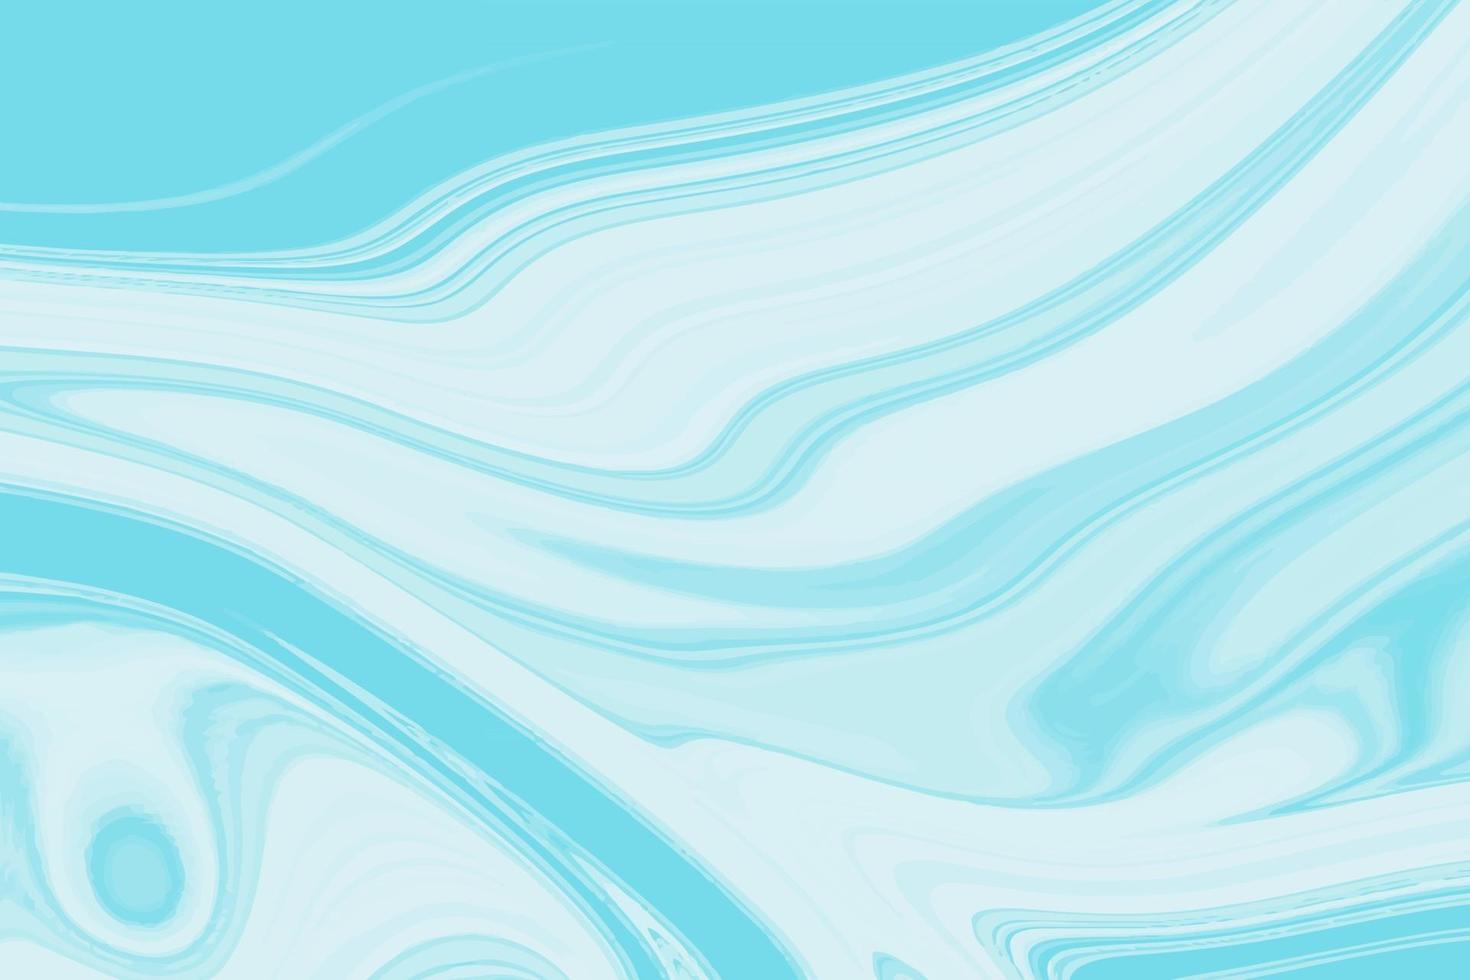 océan abstrait art de luxe marbre le style intègre un tourbillon de marbre très belle illustration vectorielle de peinture bleu clair vecteur